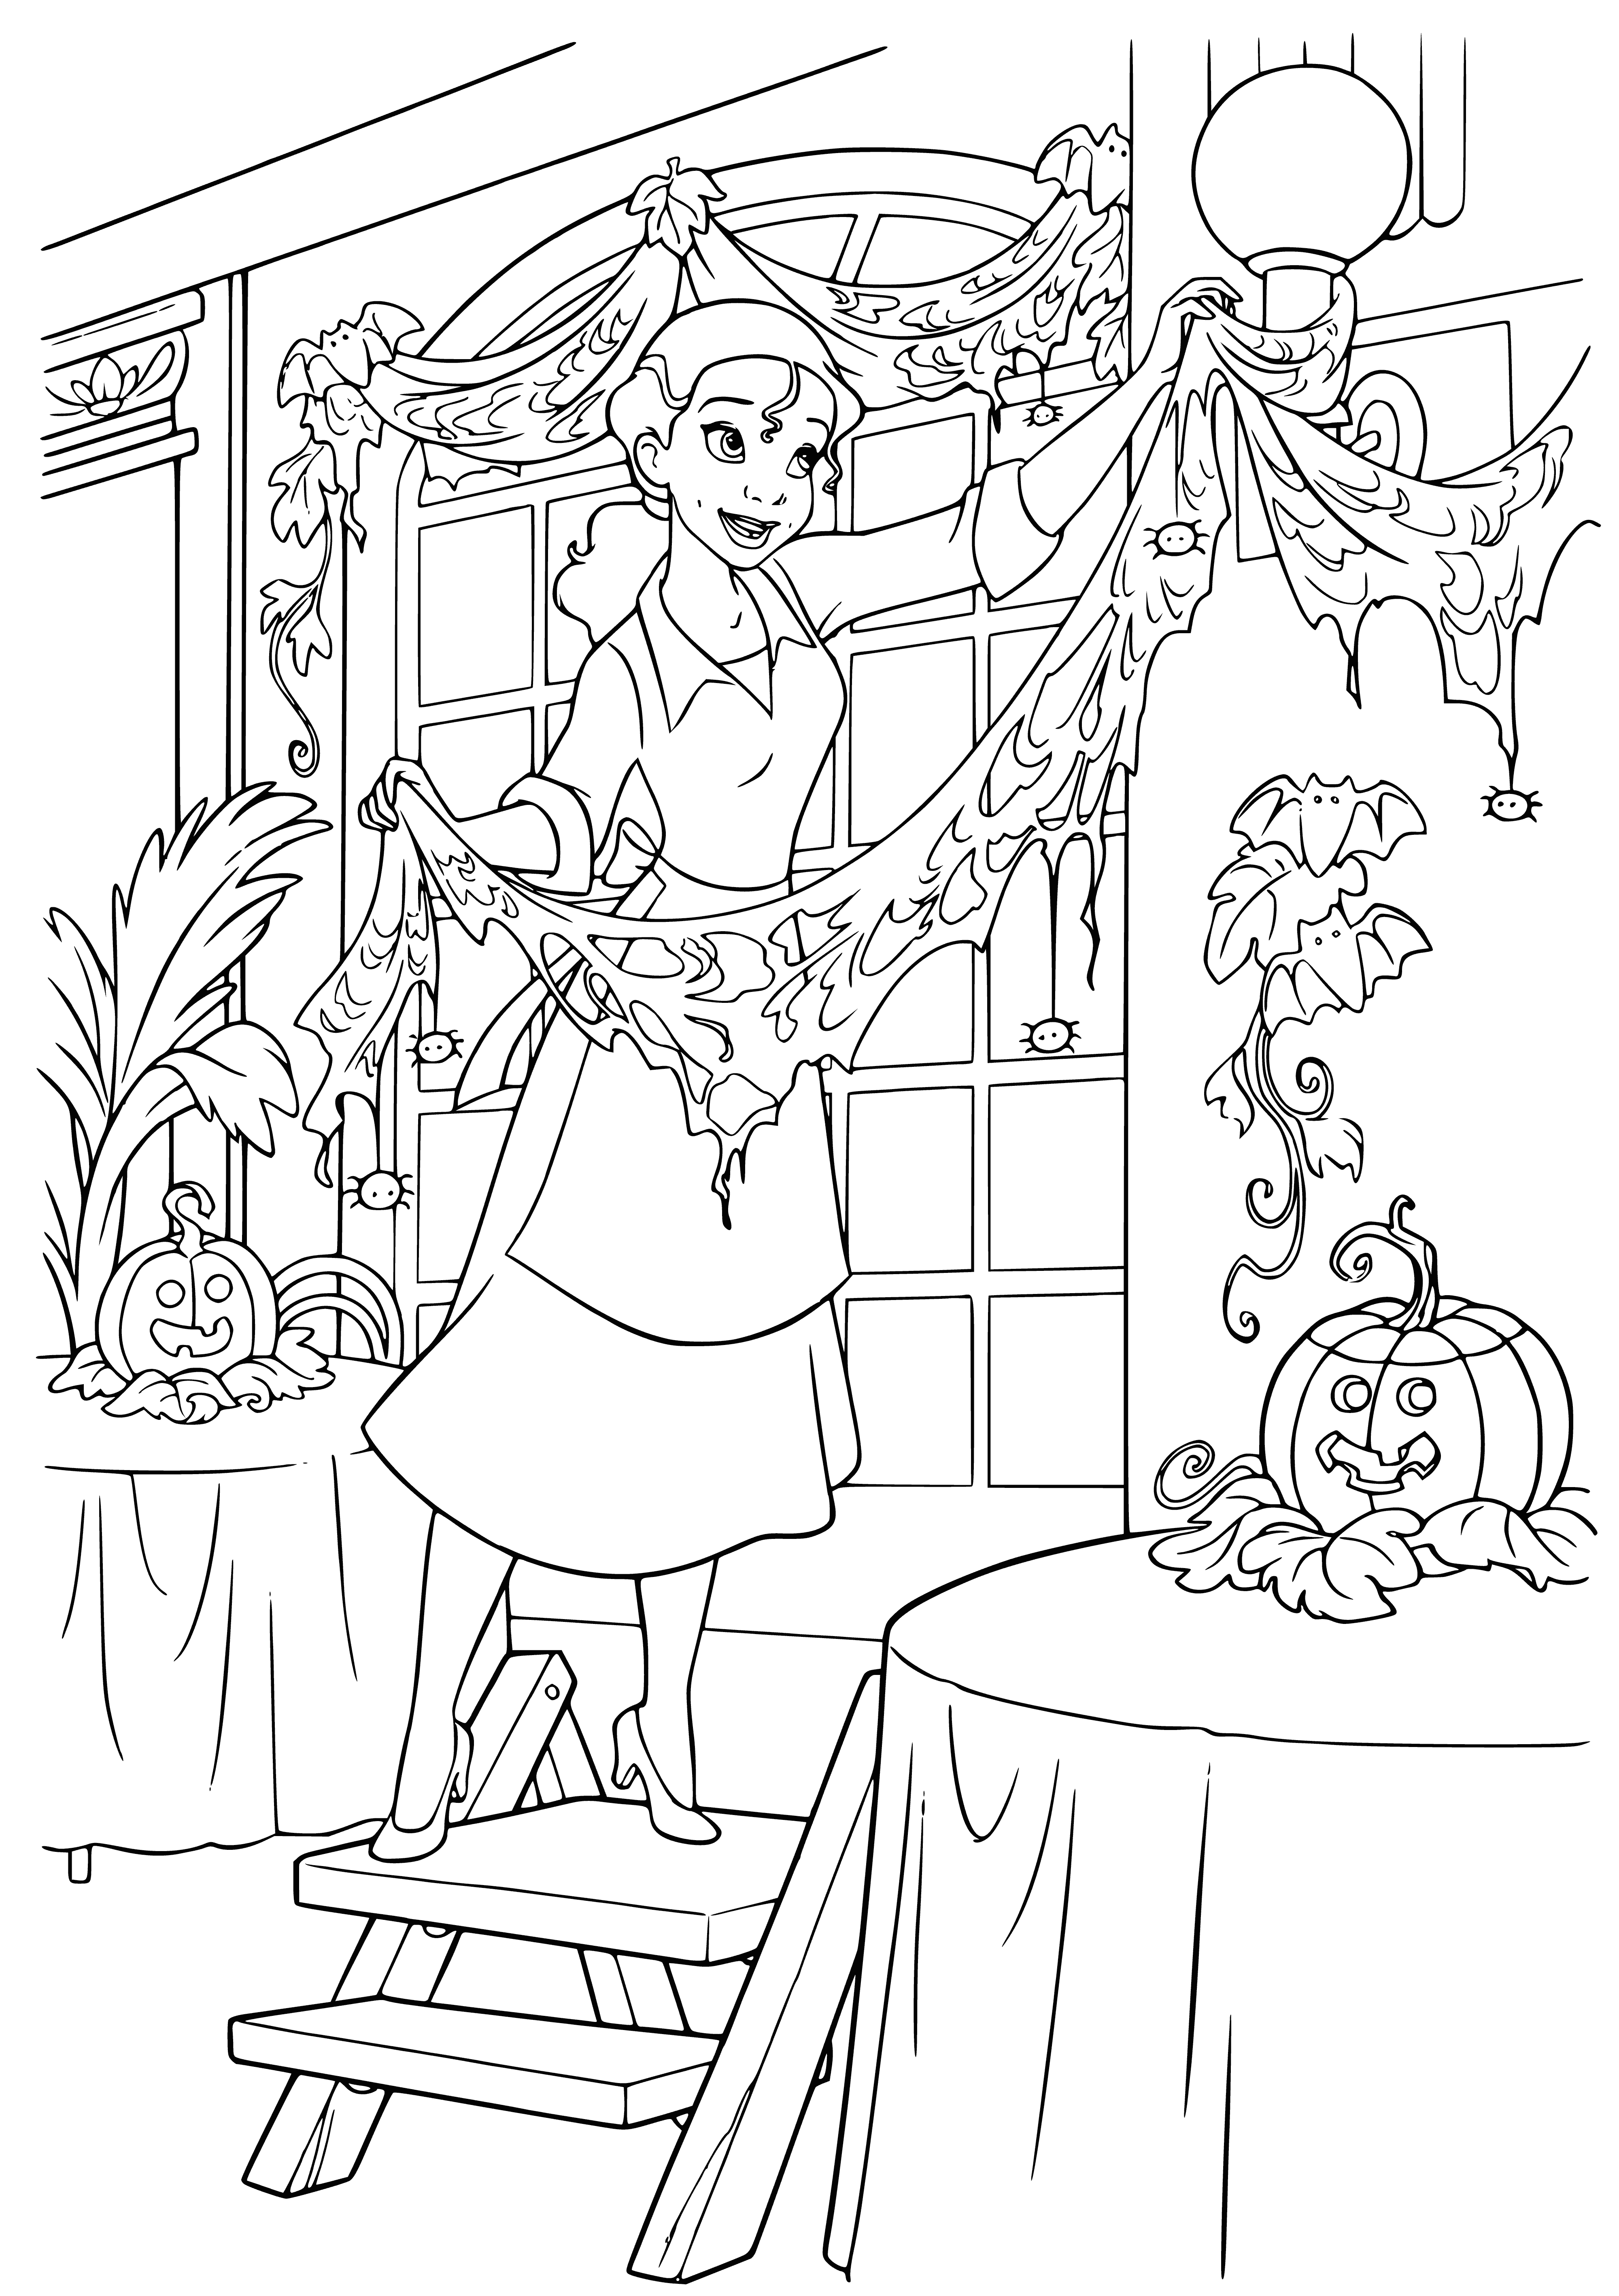 Diana bereitet sich auf Halloween vor Malseite